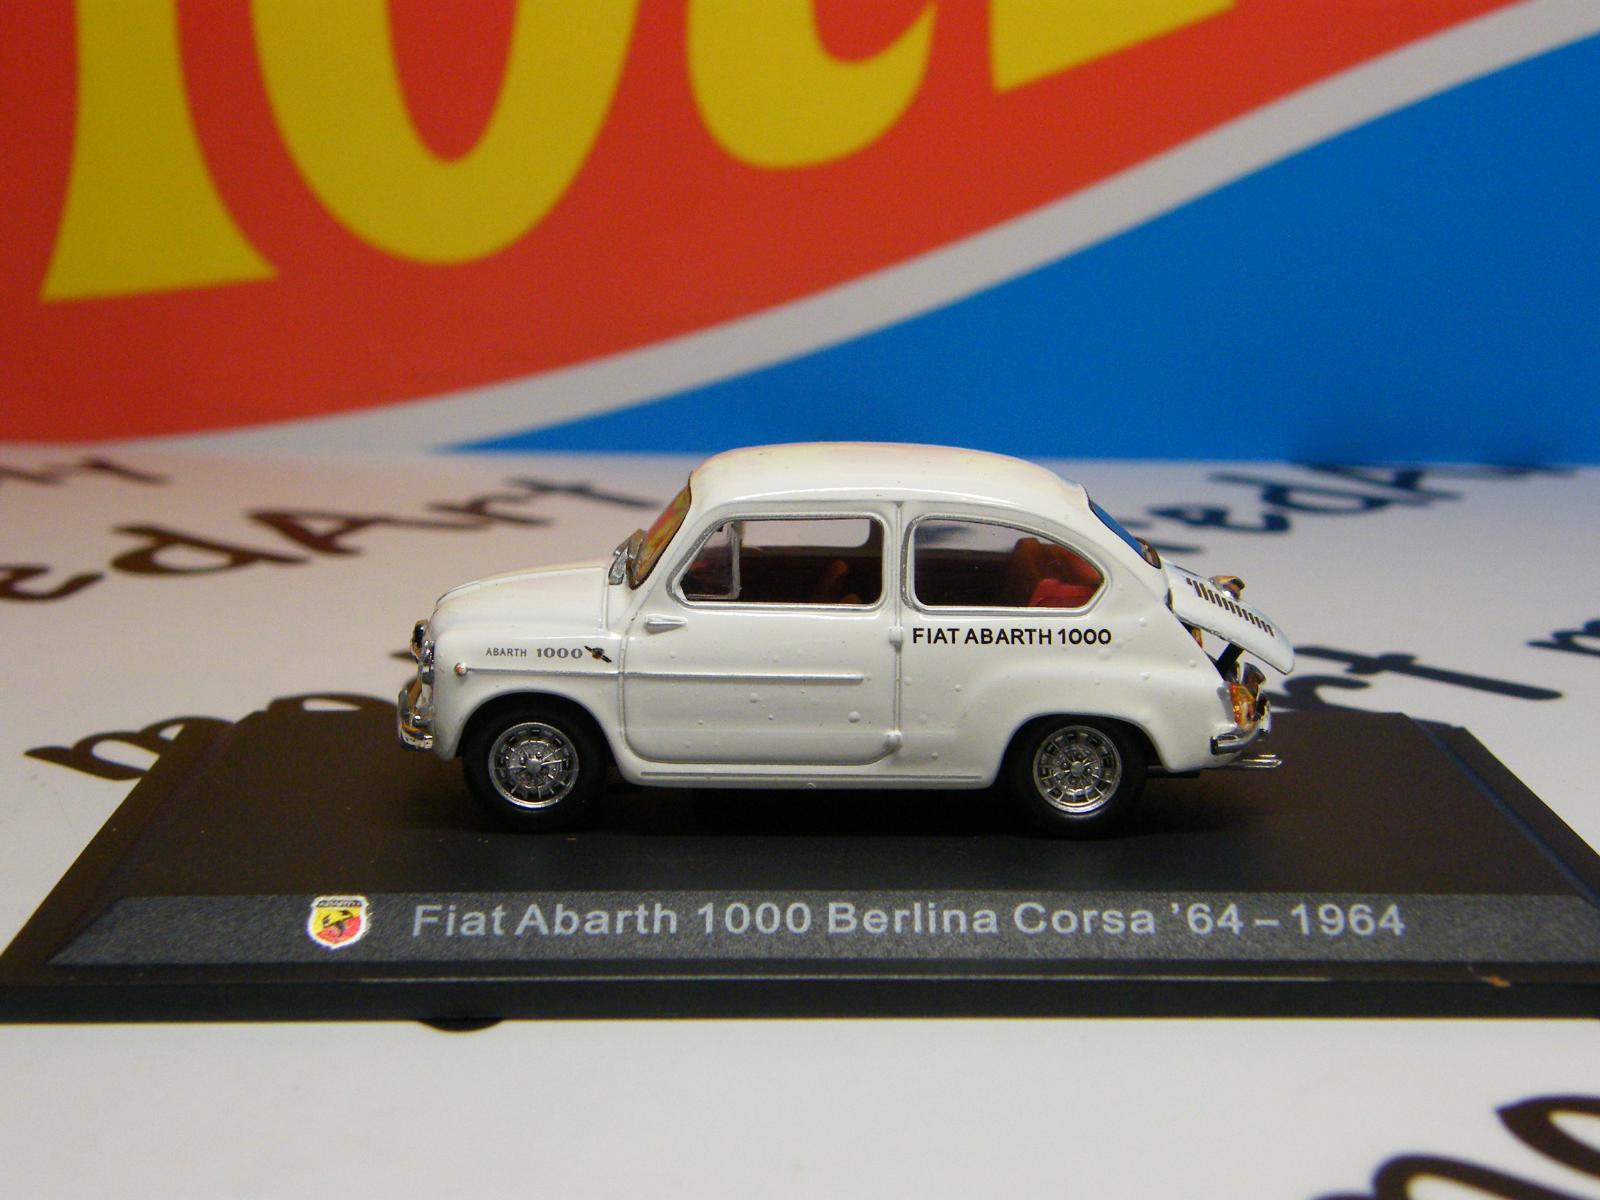 I - ABARTH  1000 Berlina Corsa 64 1964  - HACHETTE 1:43 - Modely automobilů